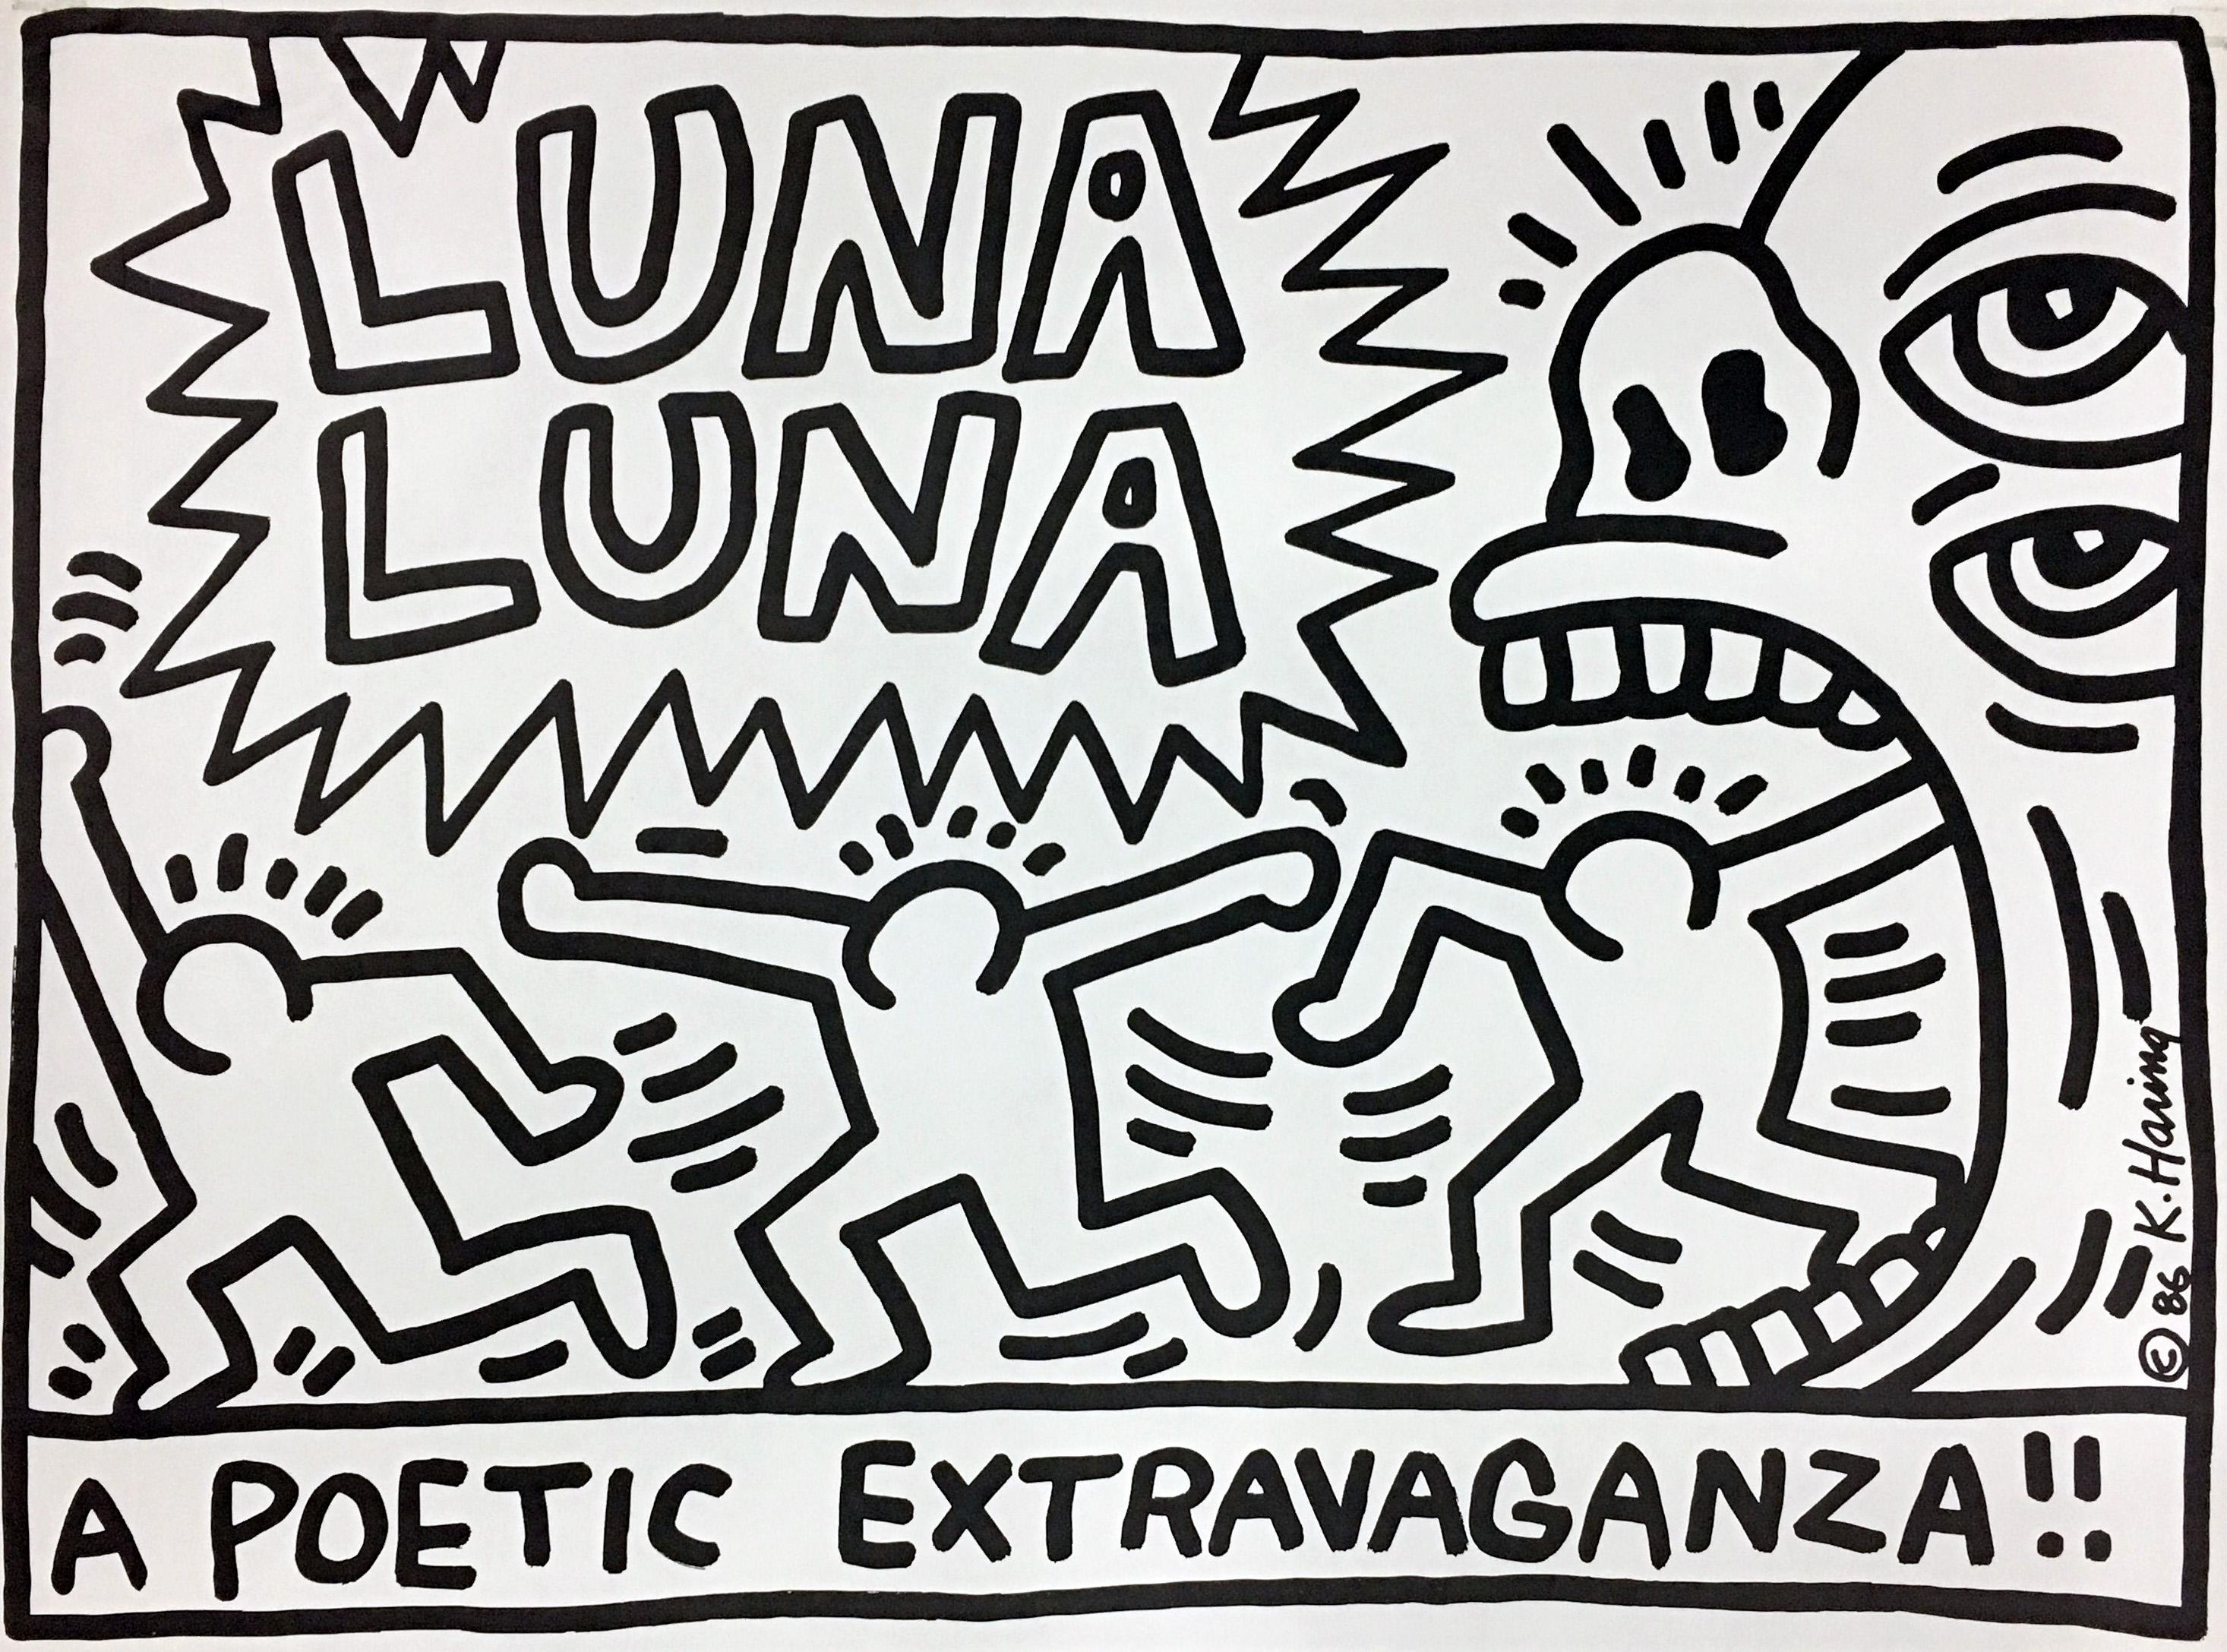 Luna Luna A Poetic Extravaganza!  - Print by Keith Haring